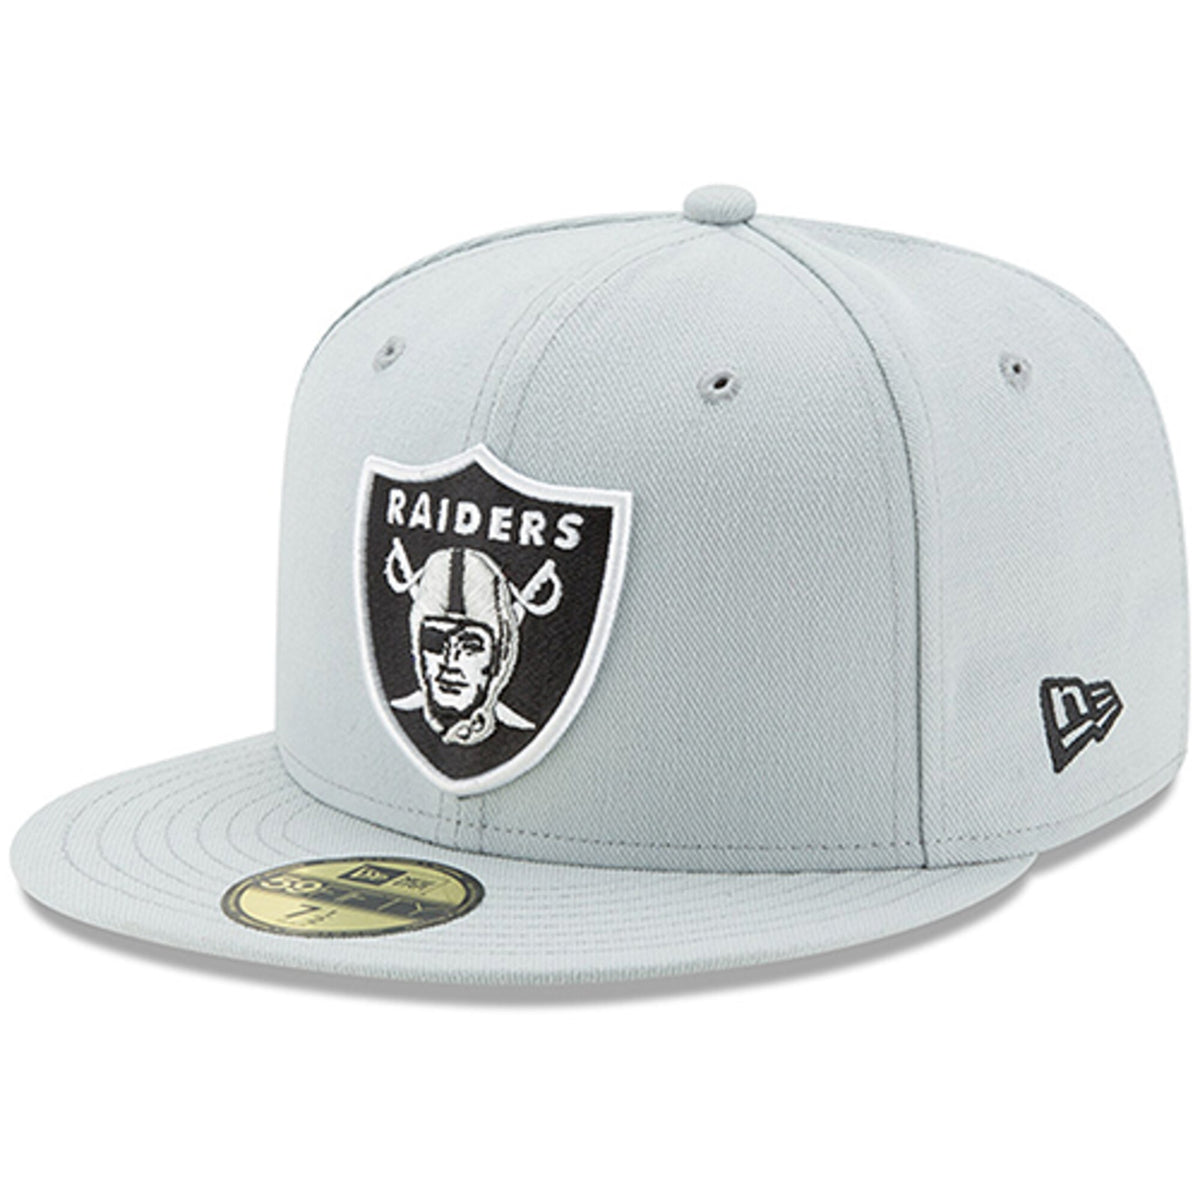 monteren Terug, terug, terug deel Rondlopen Oakland Raiders Fitted New Era 59Fifty Snow Grey Cap Hat – THE 4TH QUARTER